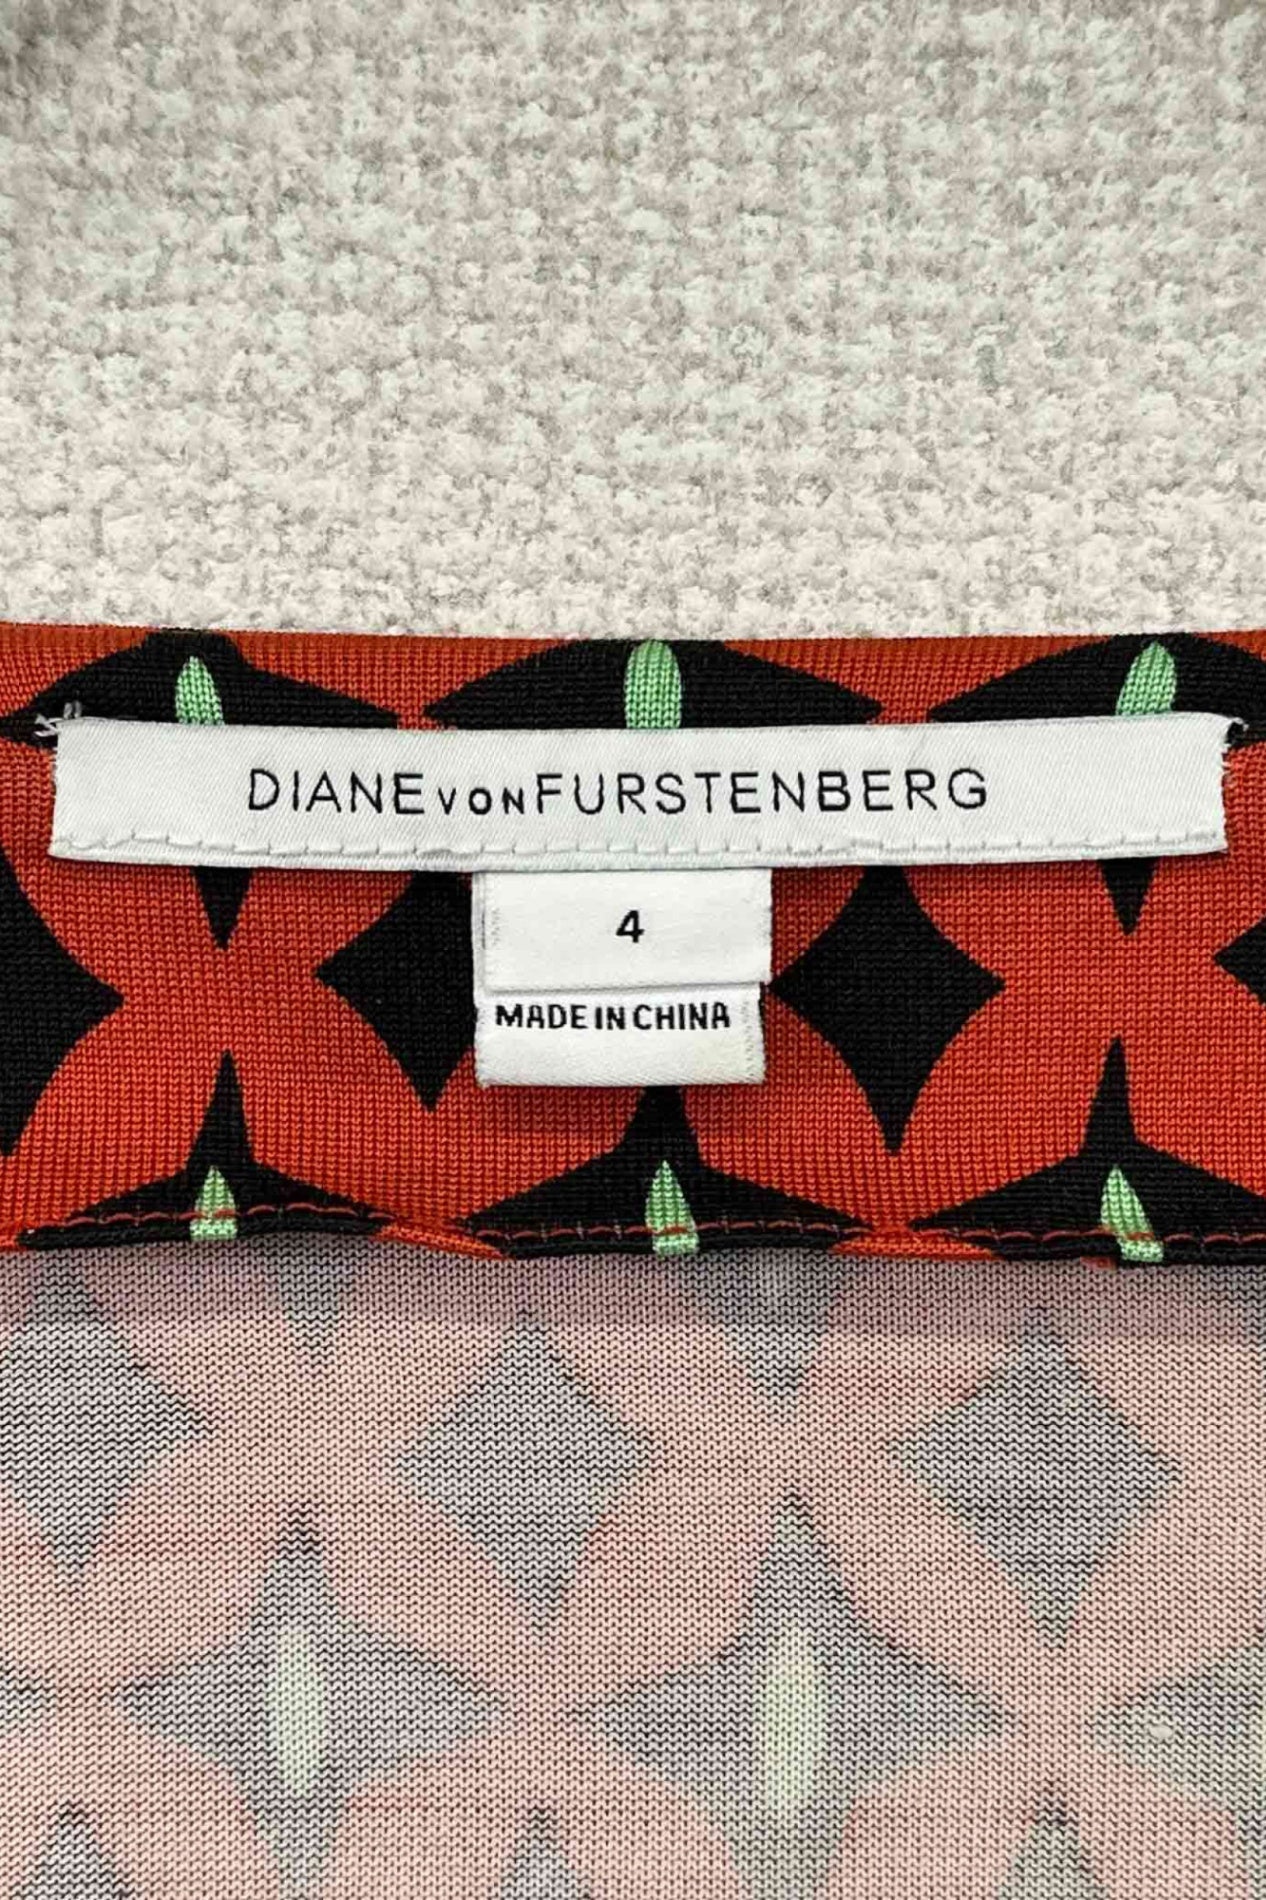 DIANE VON FURSTENBERG silk one-piece